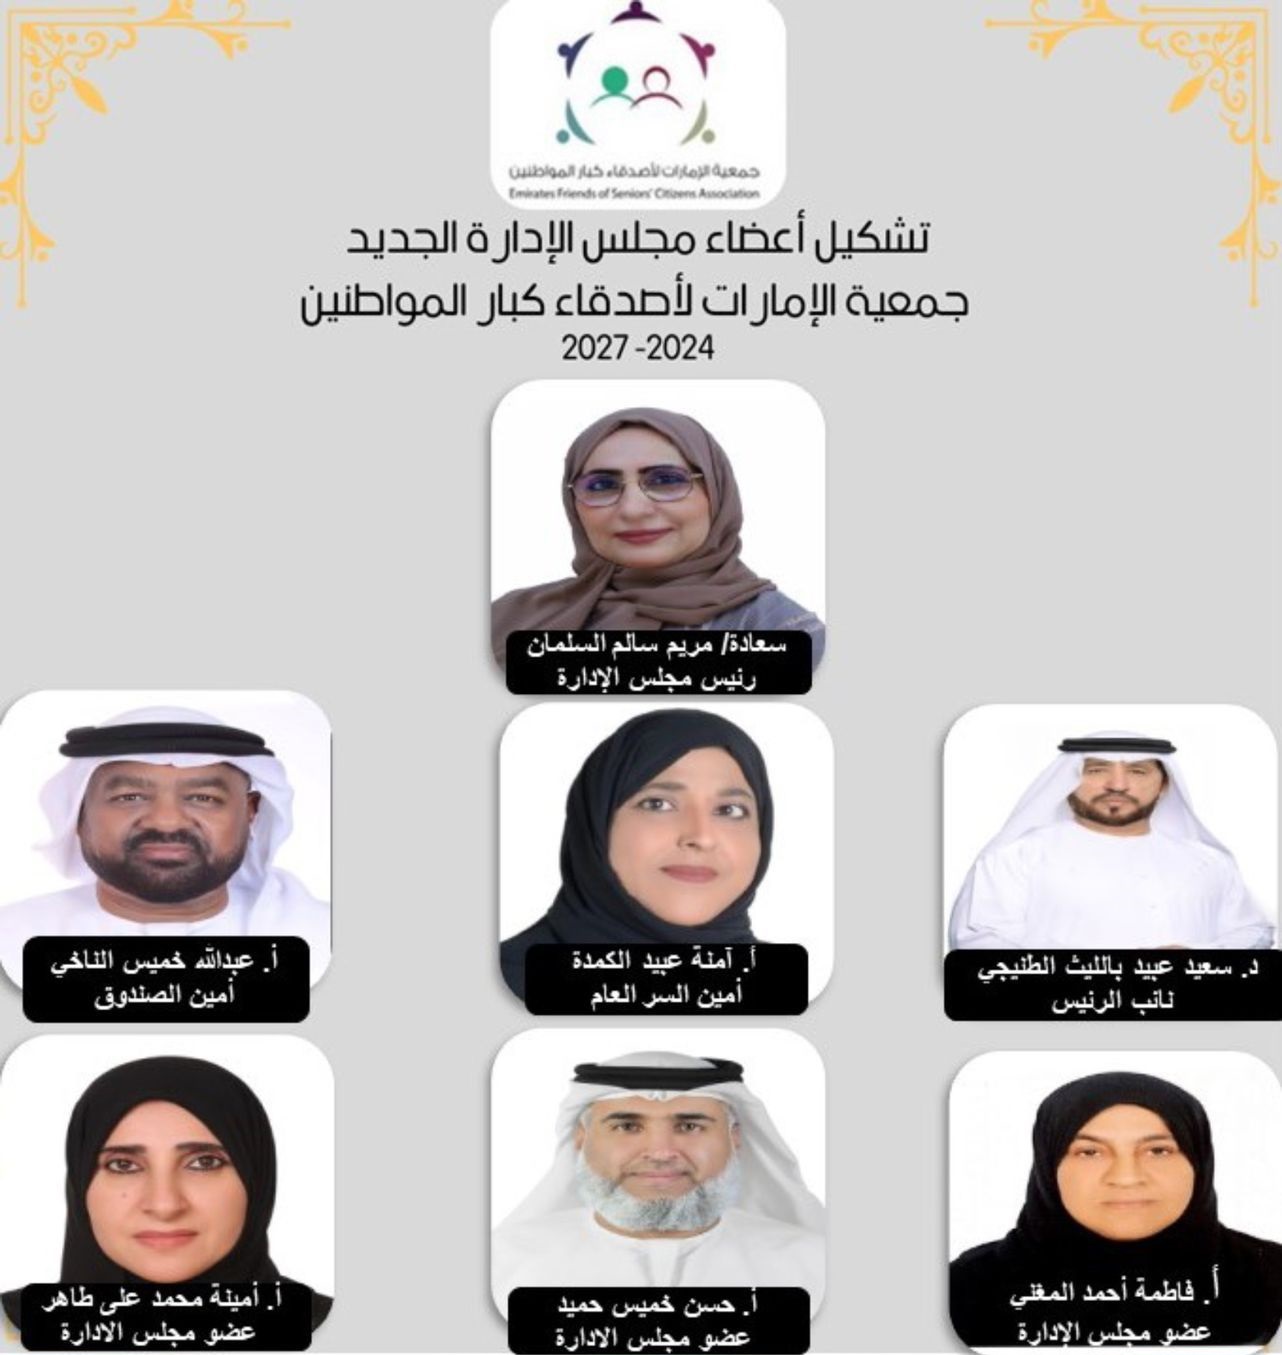 جمعية الإمارات لأصدقاء كبار المواطنين توزع مناصبها الإدارية